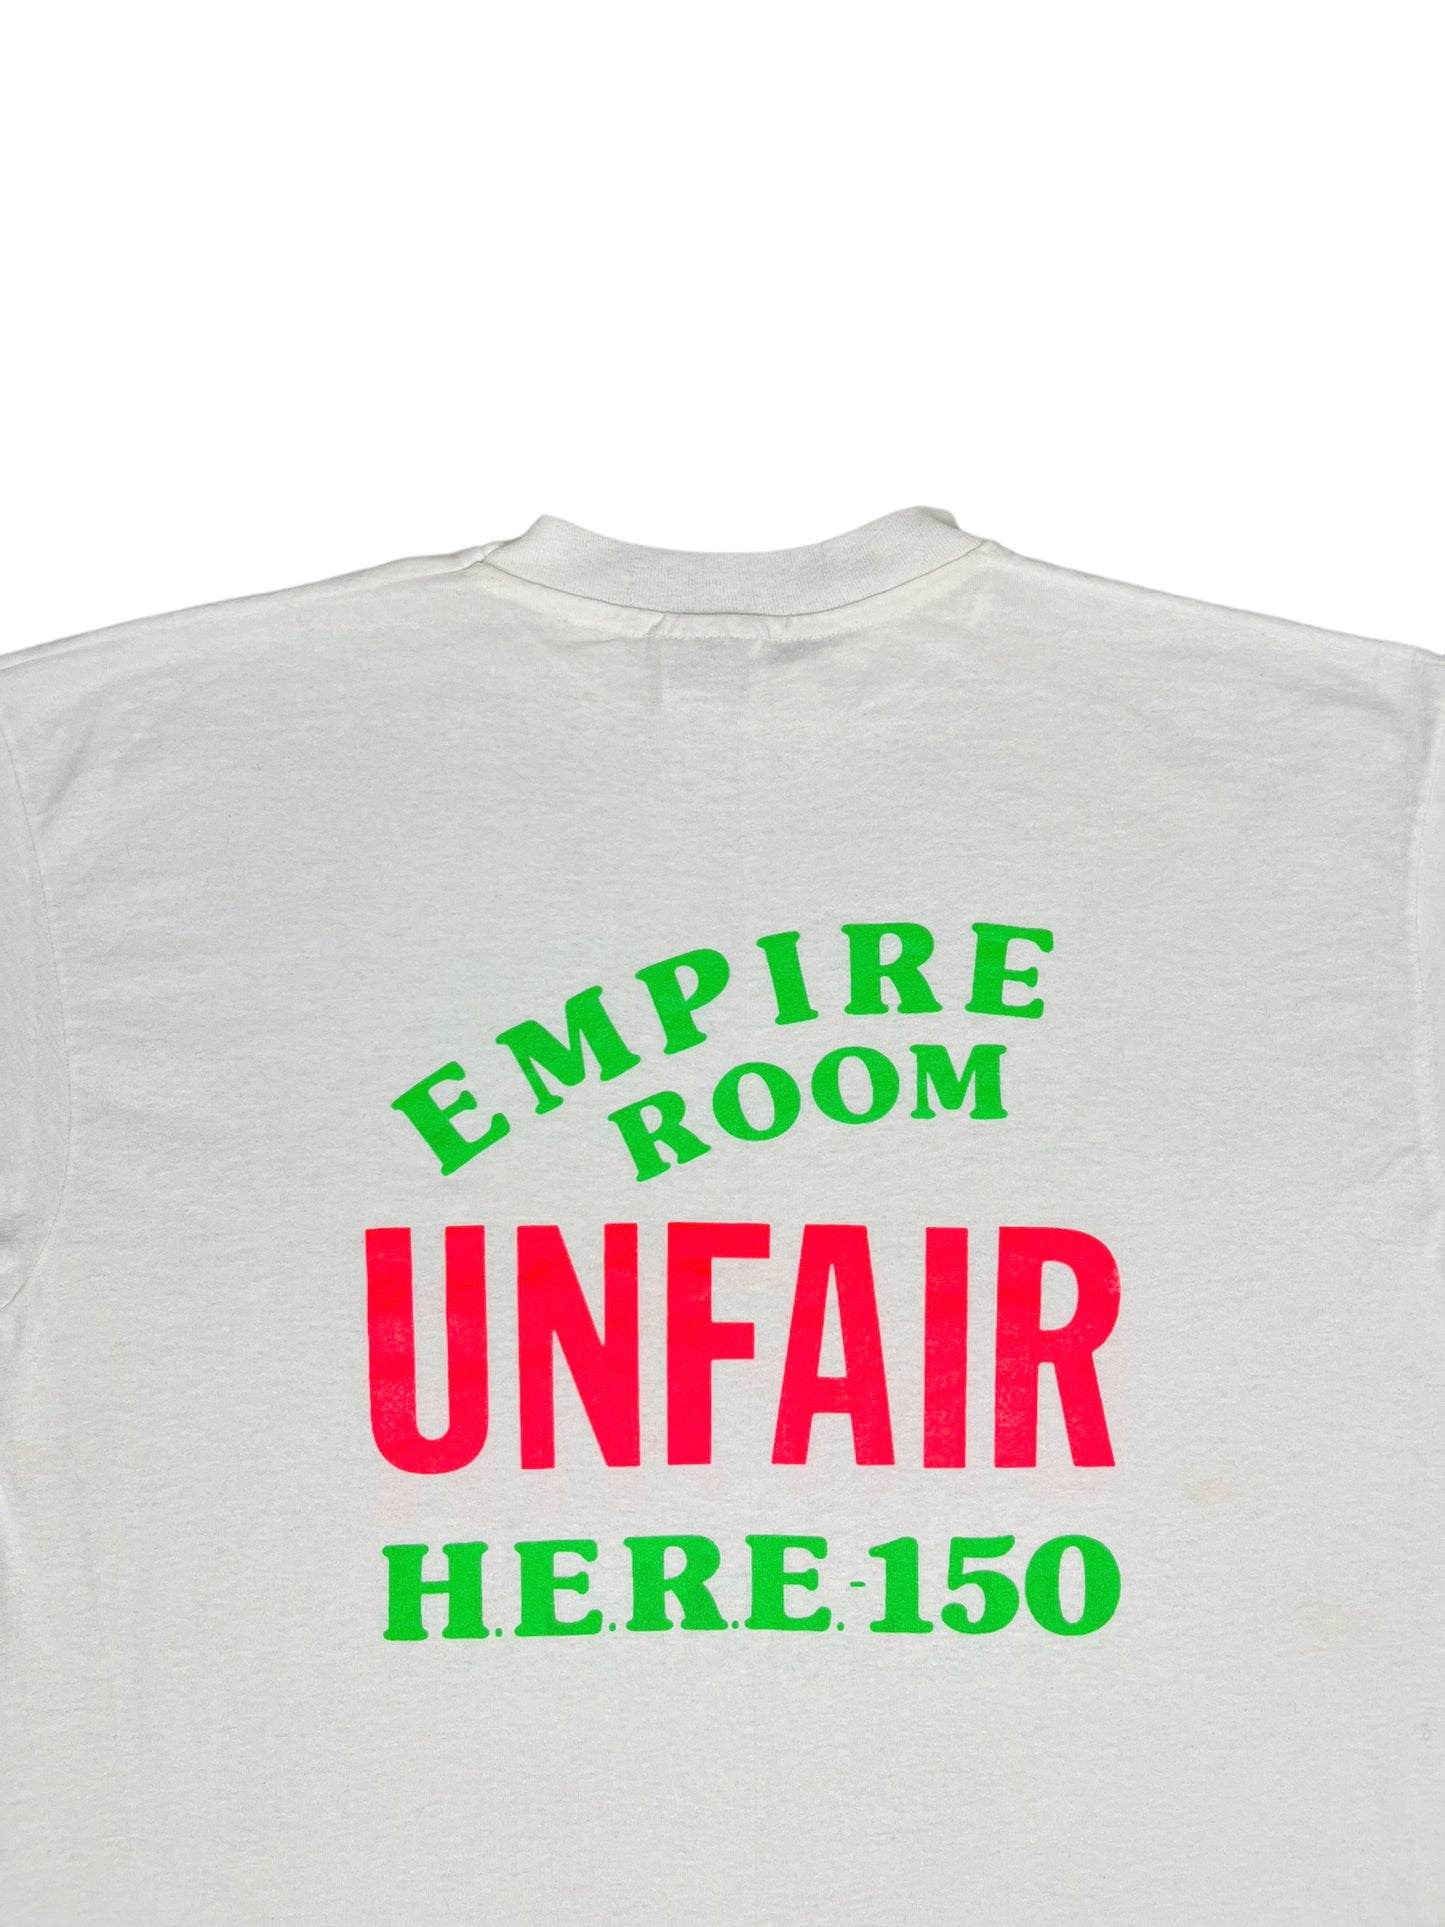 Vintage 90’s Empire Room Unfair T Shirt - XL